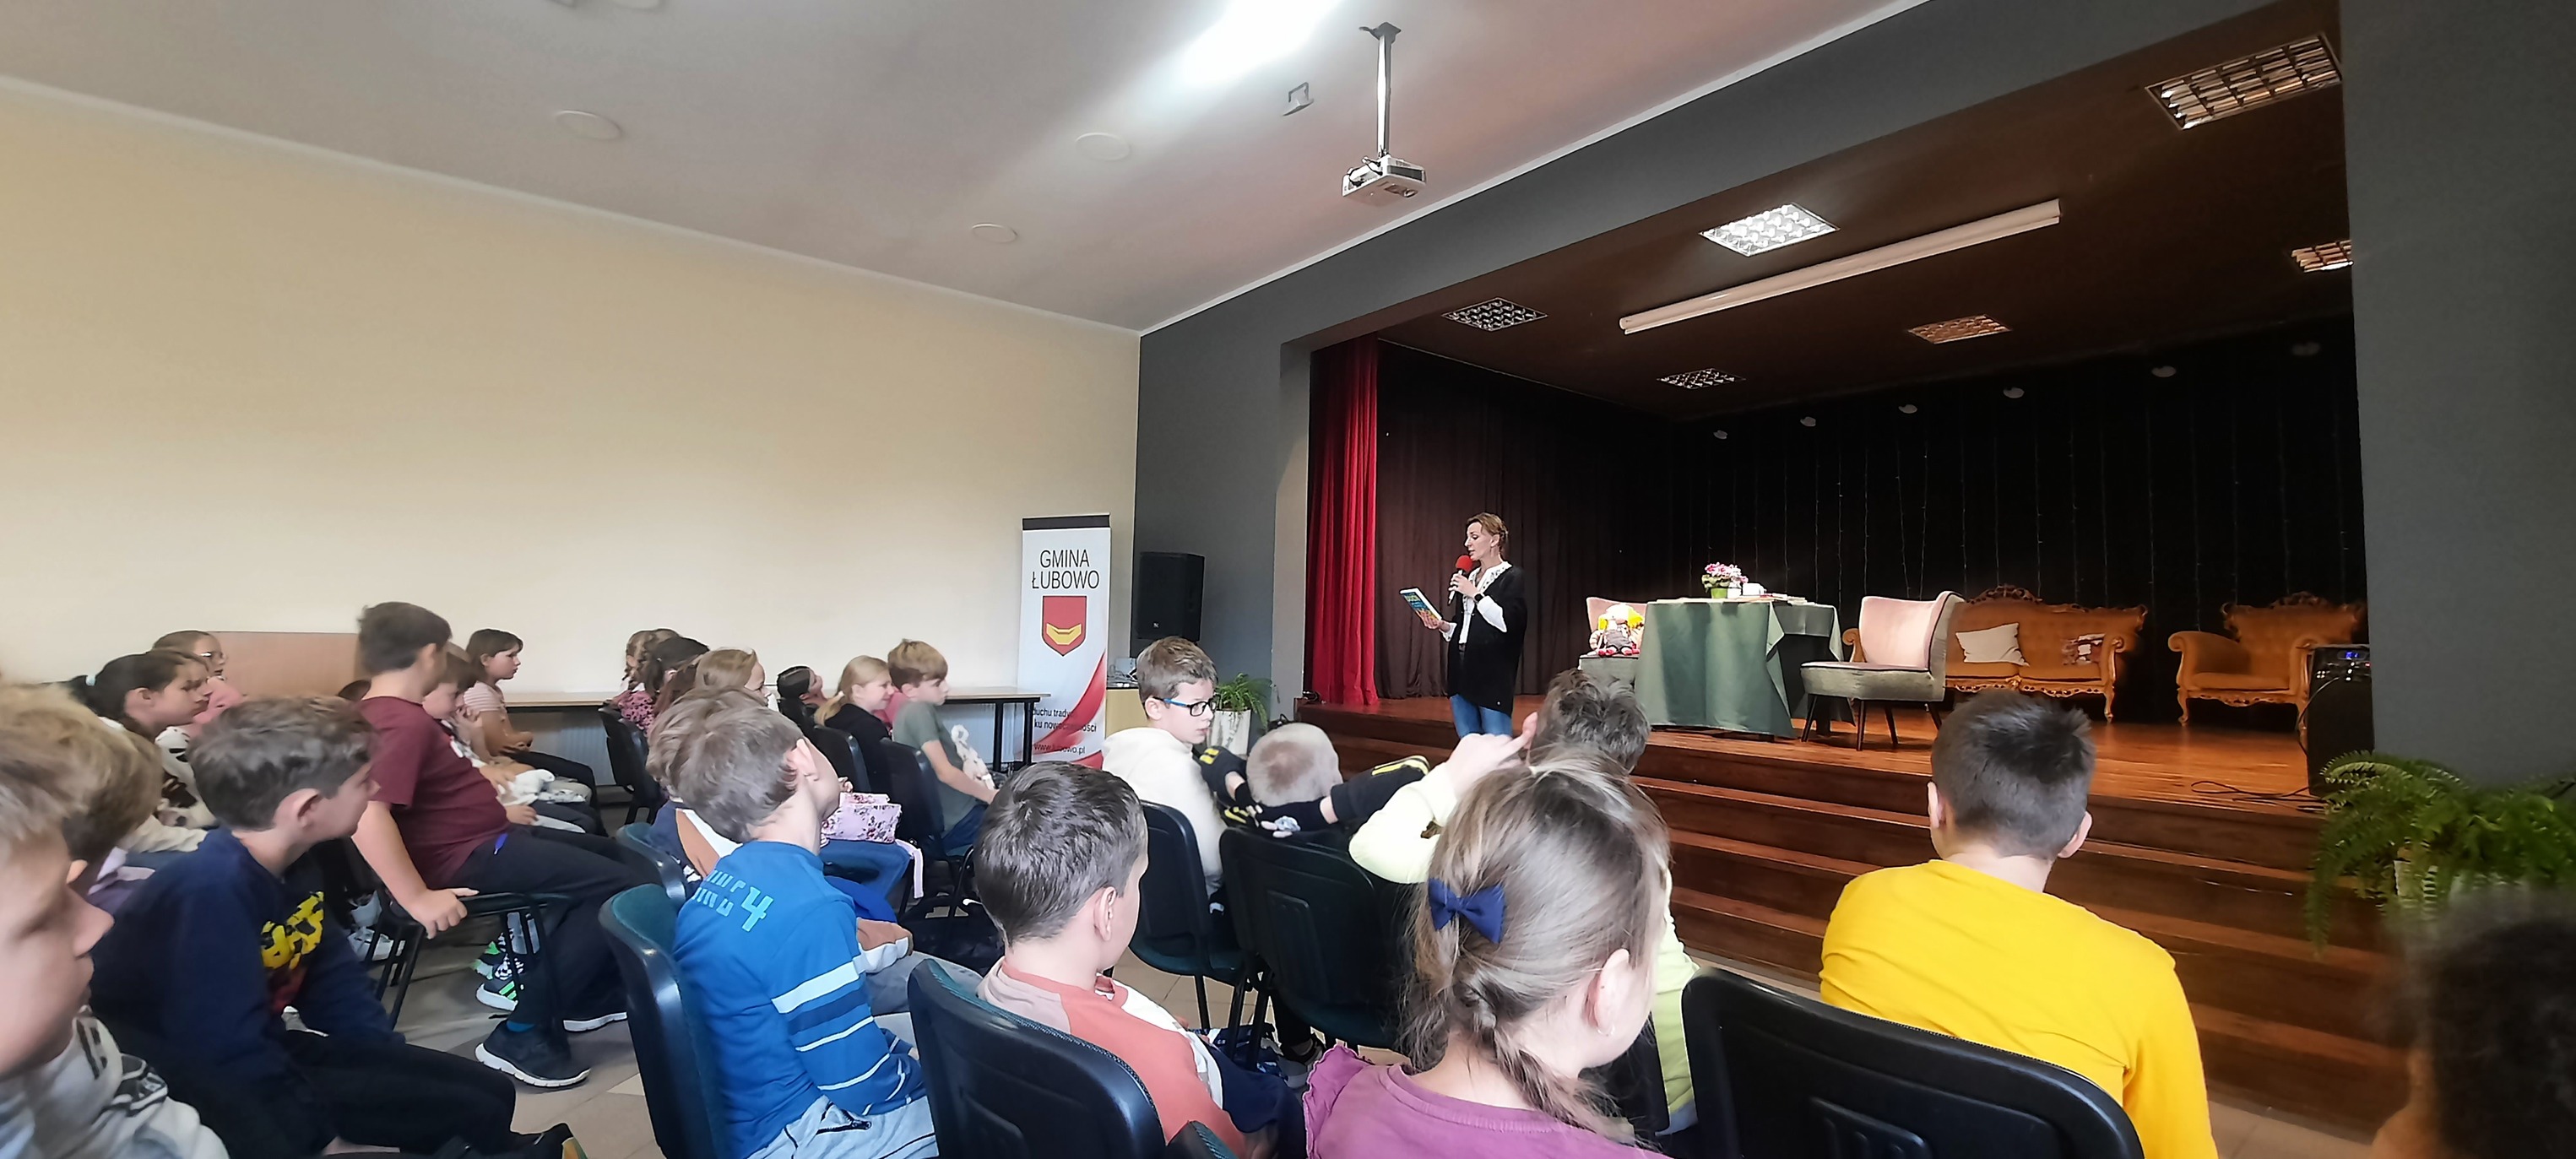 Spotkanie autorskie w Bibliotece publicznej w Łubowie